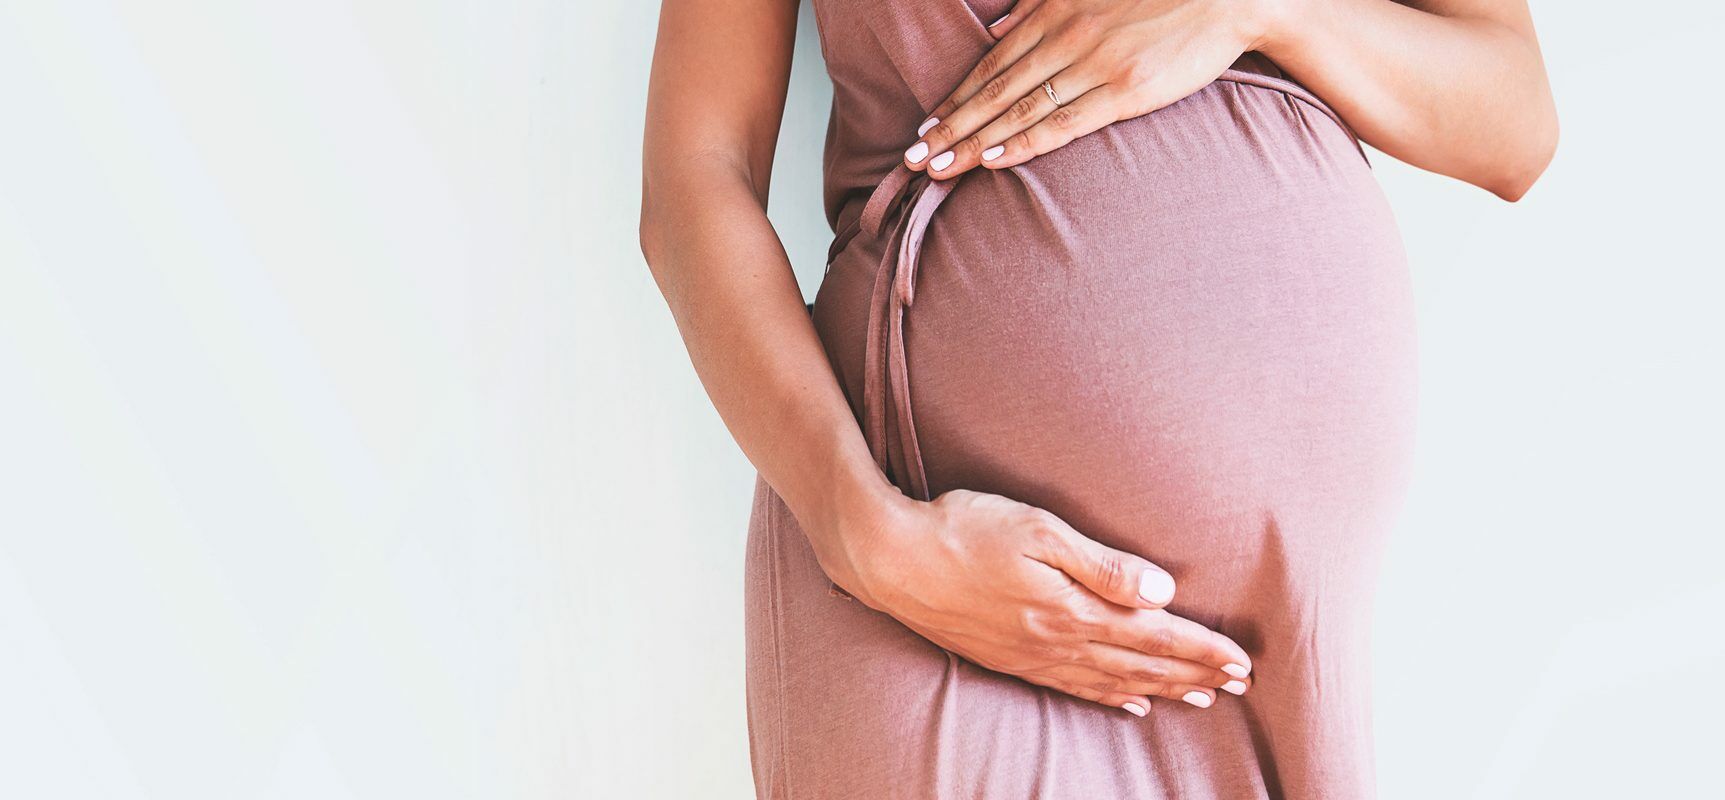 Cesarskie cięcie czy poród naturalny? Jakie są zalety porodu siłami natury i jak zadbać o noworodki urodzone przez CC? Kobieta w zaawansowanej ciąży w różowej sukience dotyka brzucha.